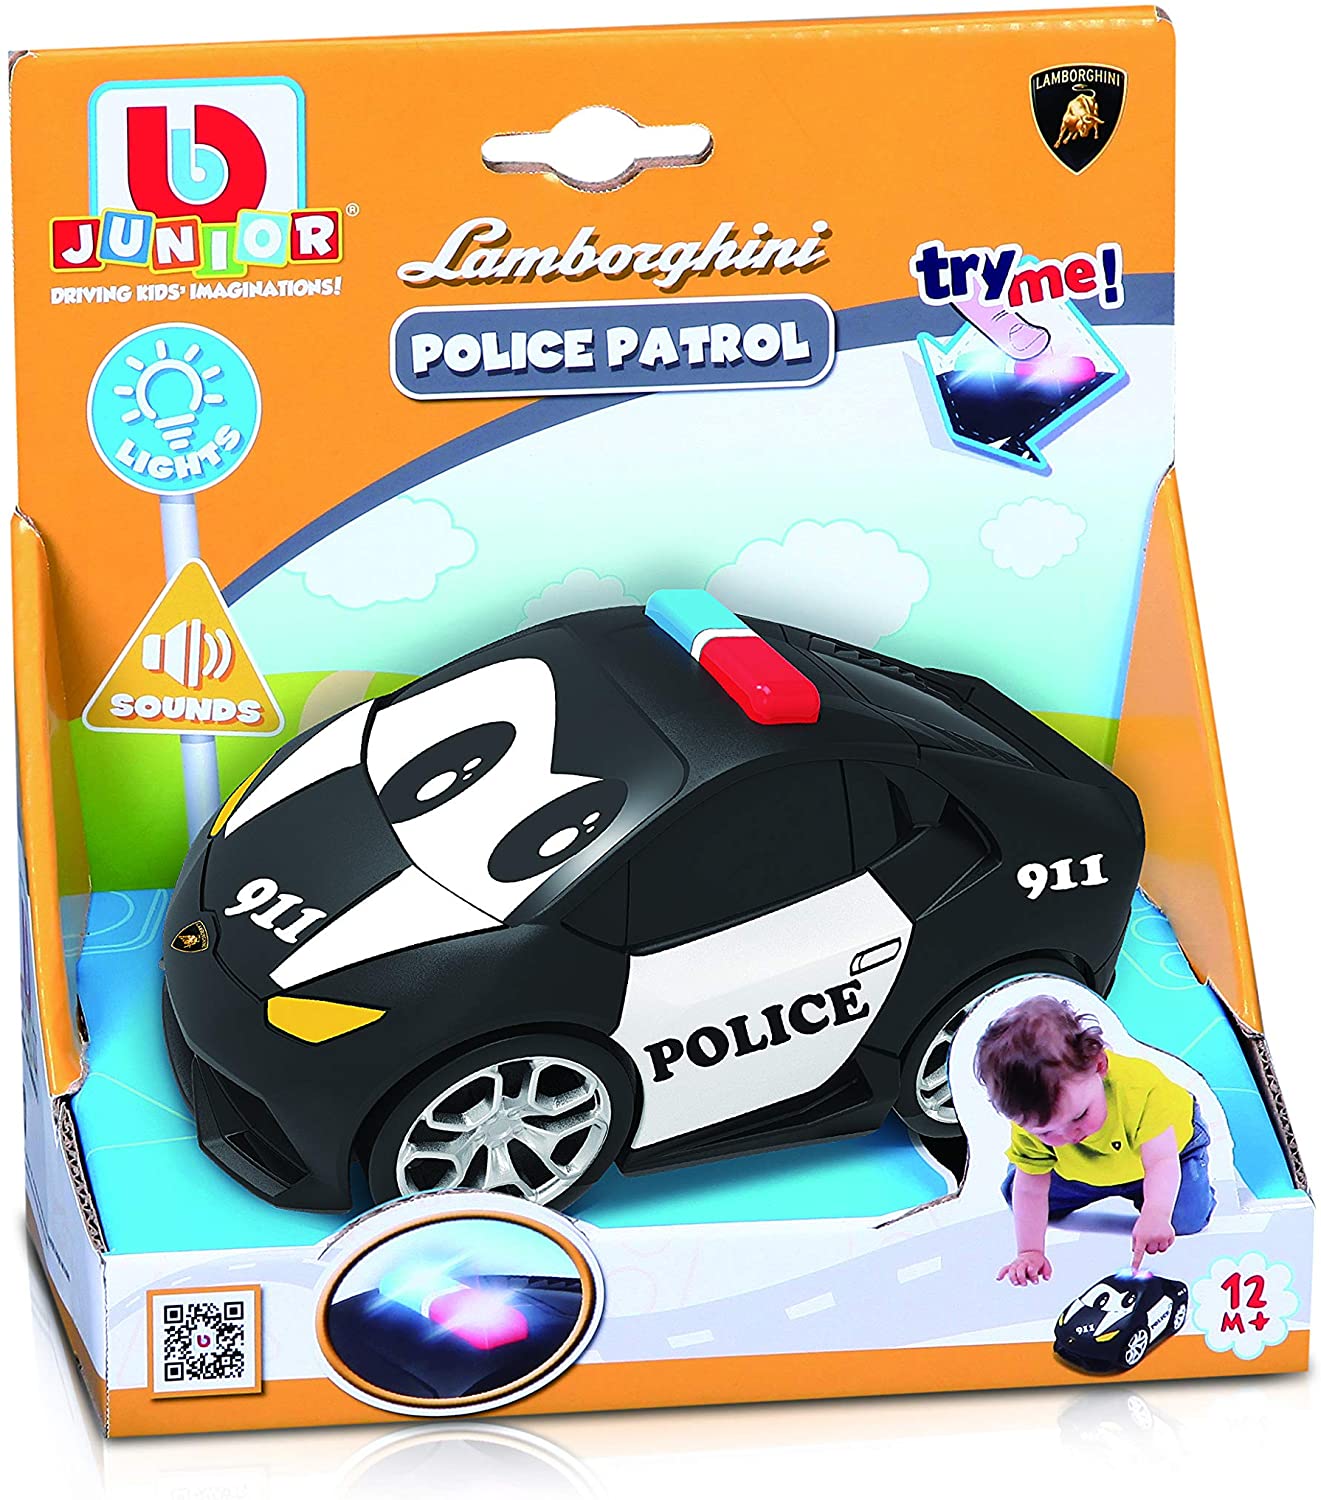 BBJunior Lamborghini Police Patrol